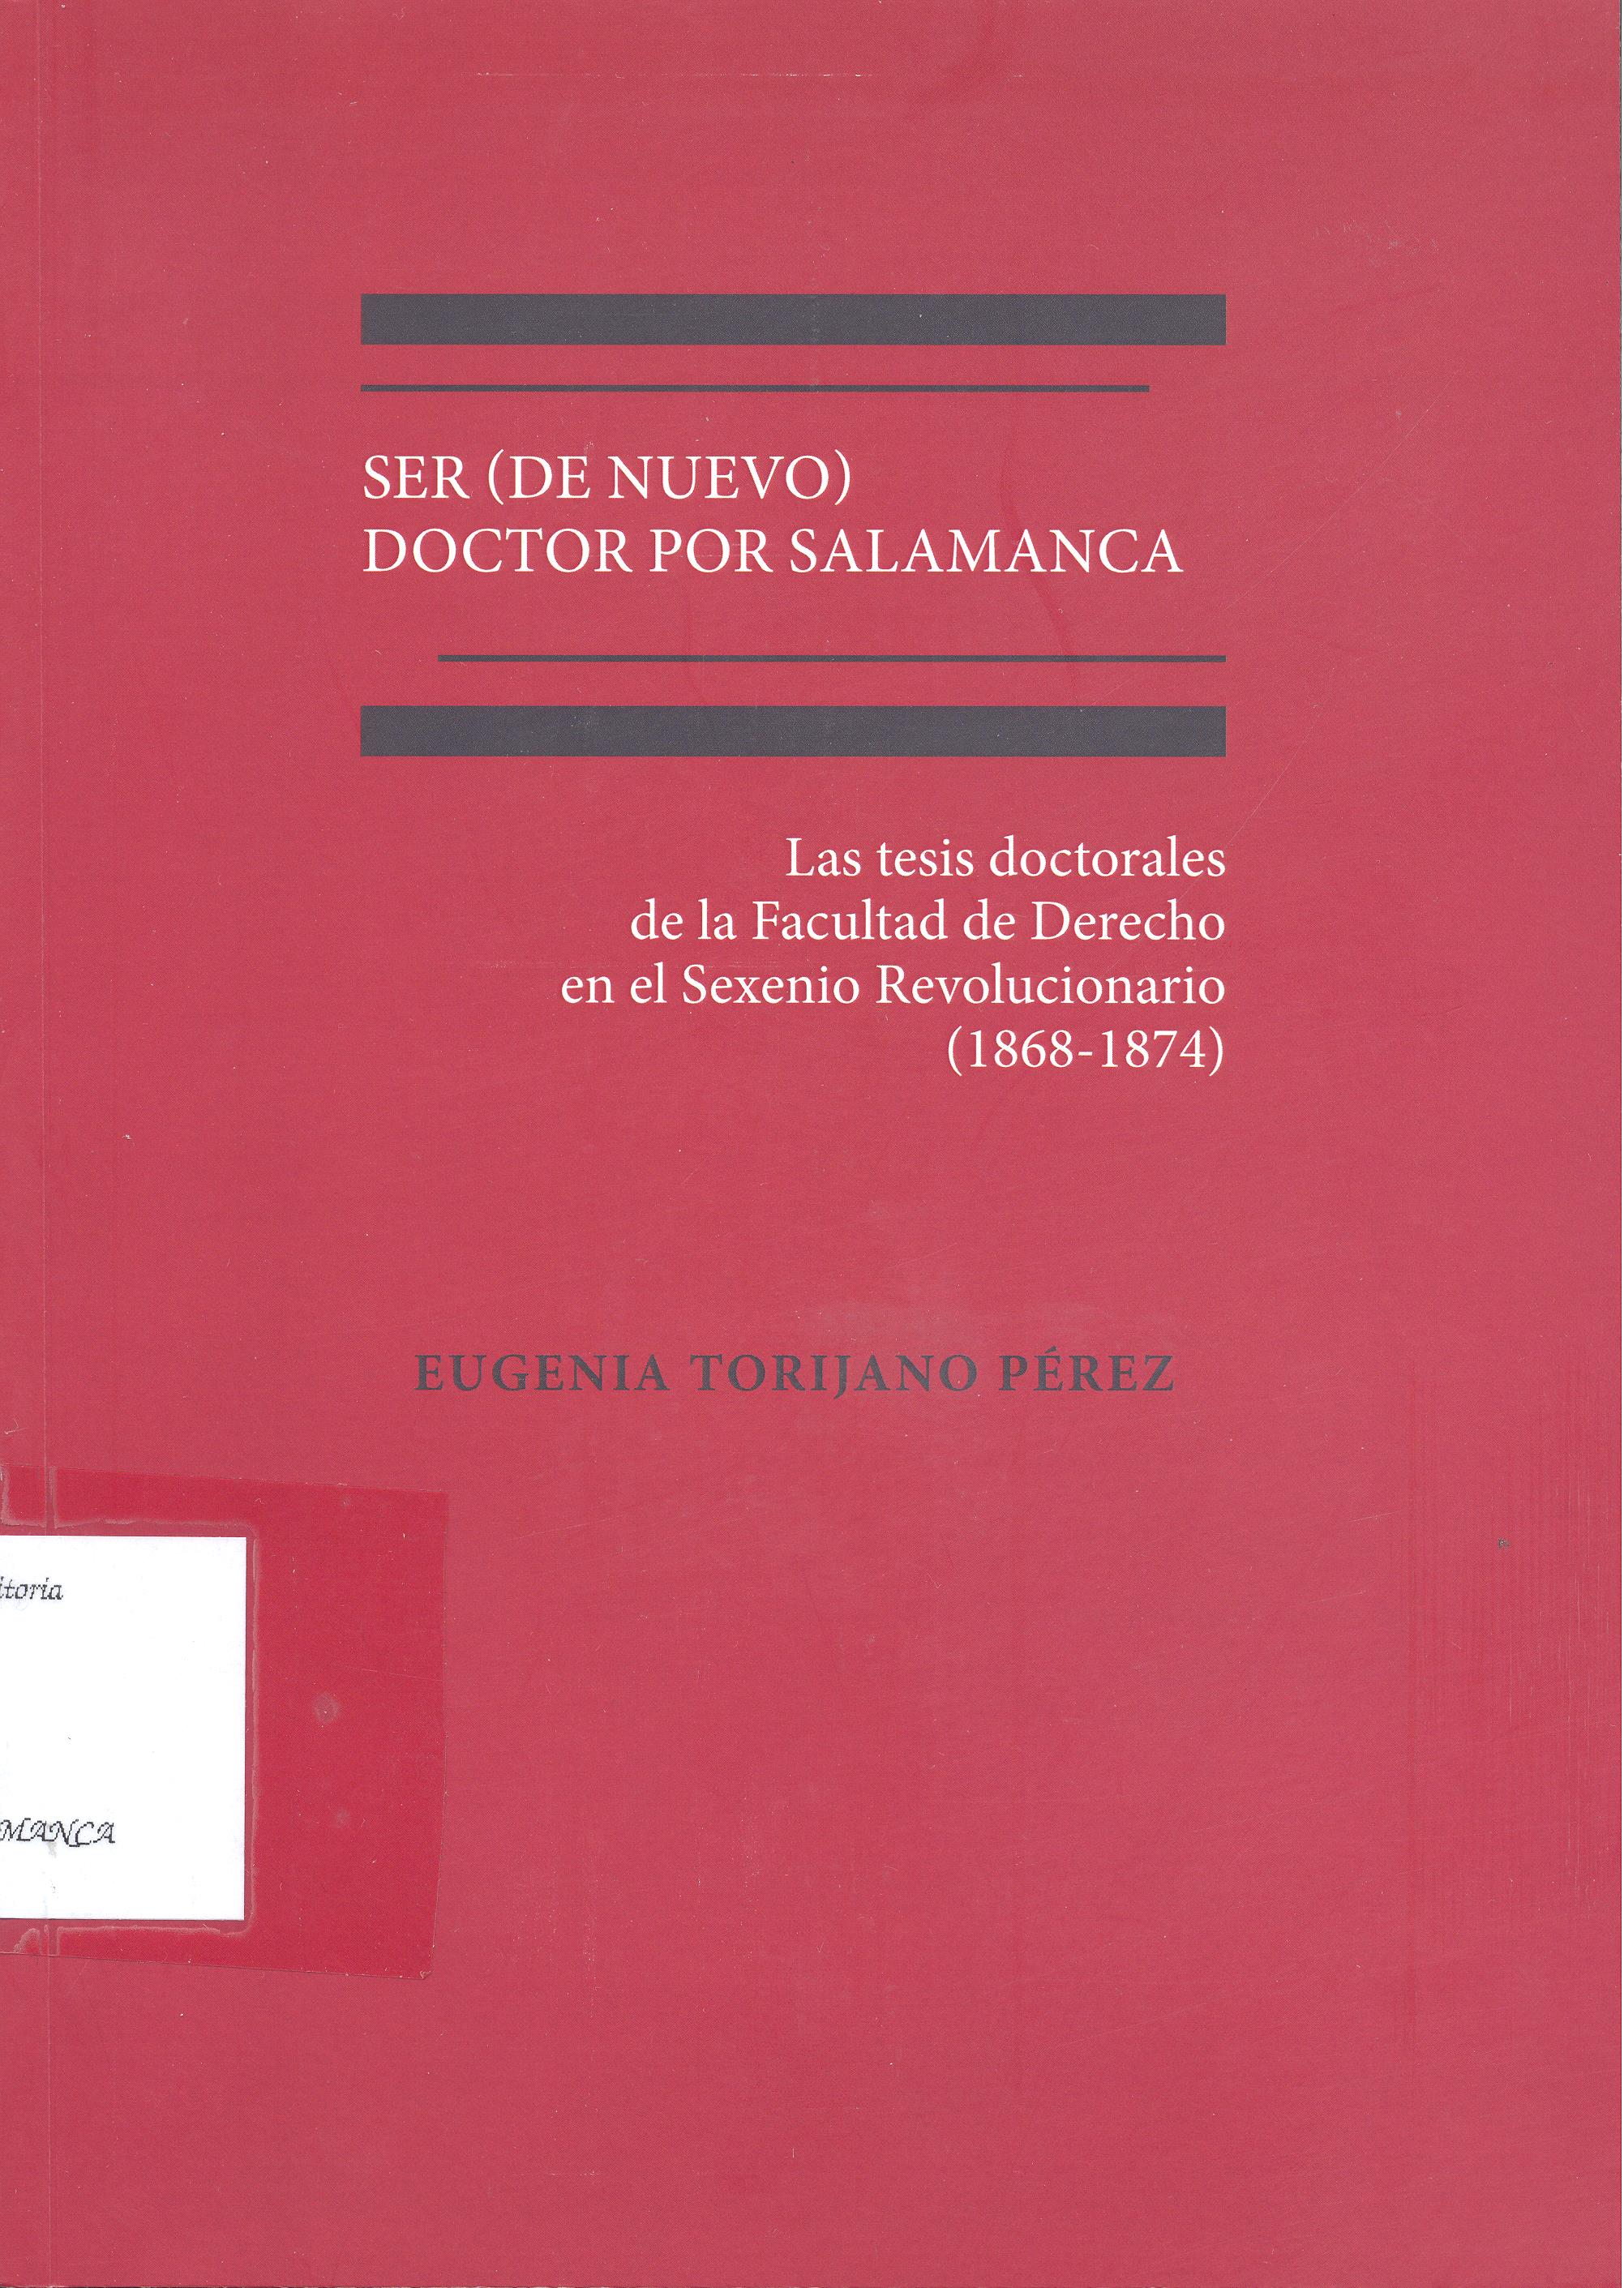 Imagen de portada del libro Ser (de nuevo) doctor por Salamanca. Las tesis doctorales de la Facultad de Derecho en el Sexenio Revolucionario (1868-1874)